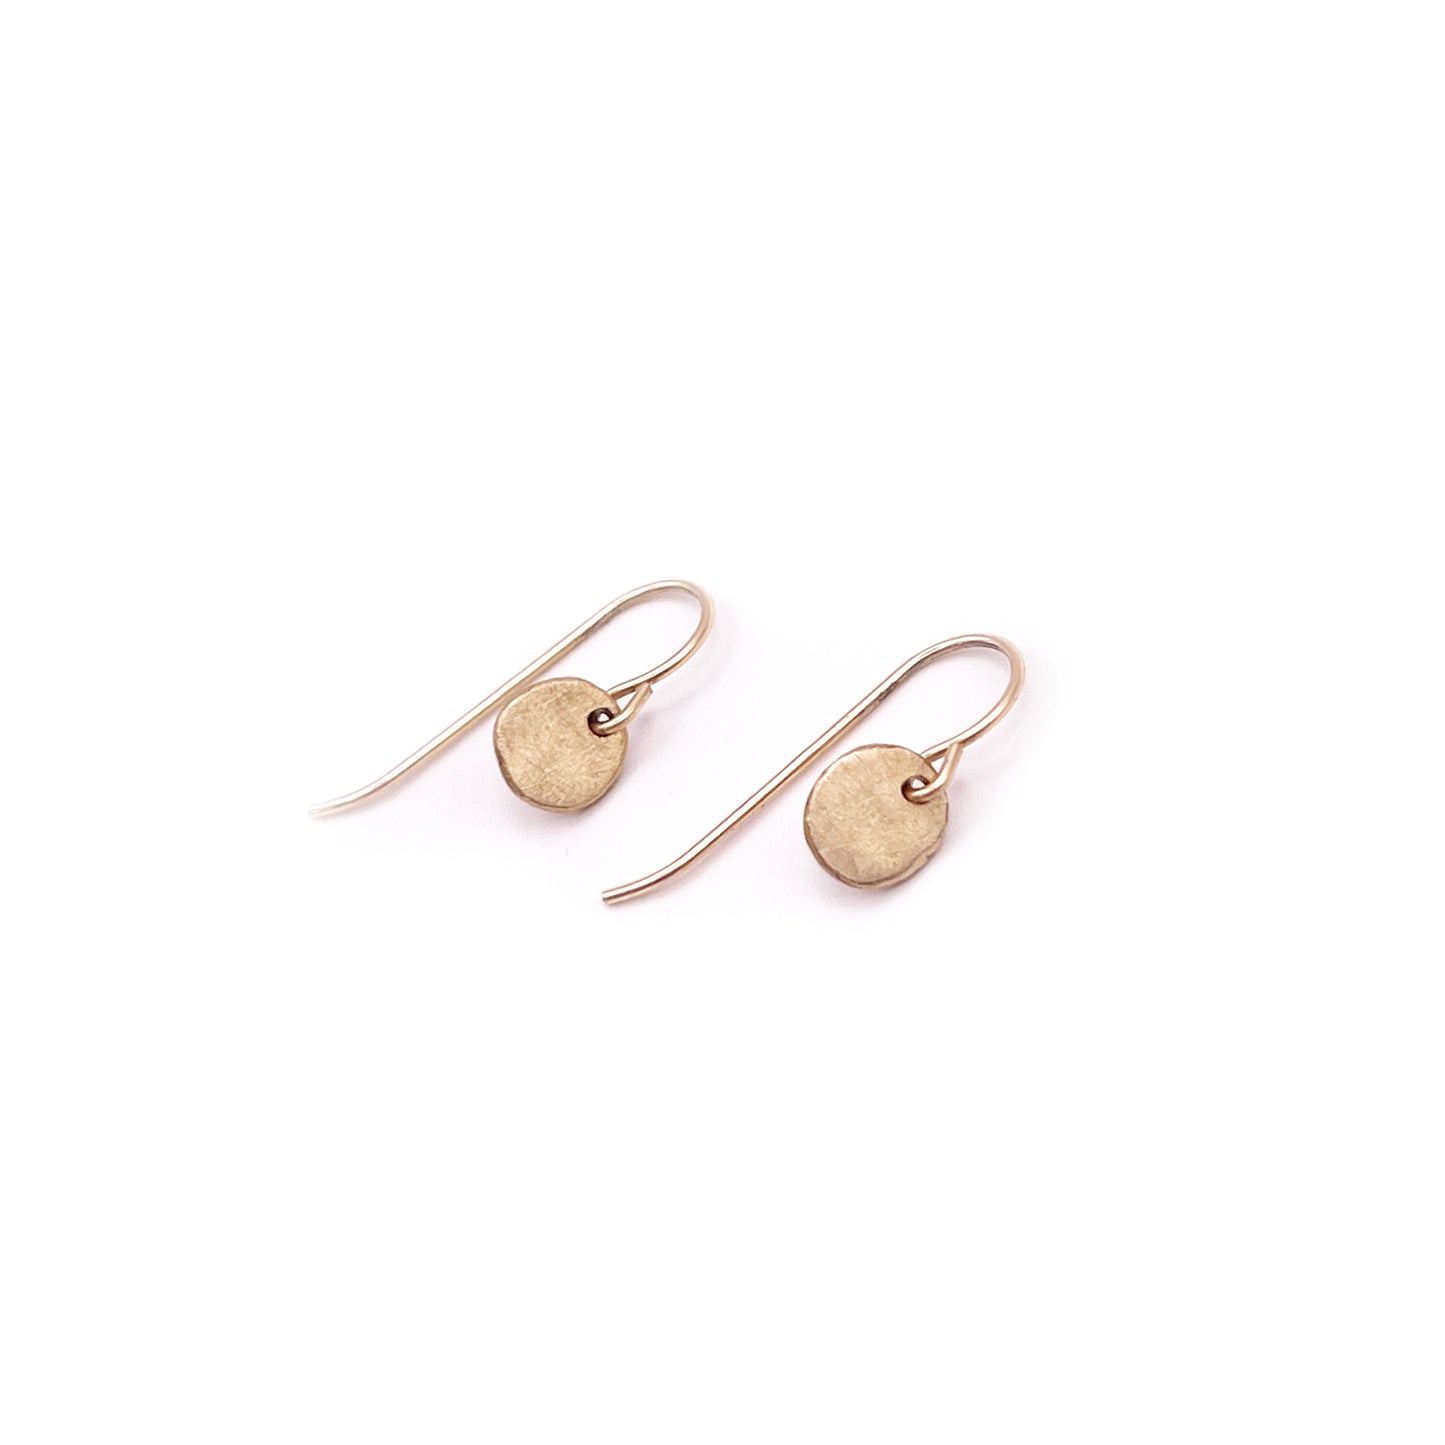 Serendipity Dangle Earrings: 14K Gold